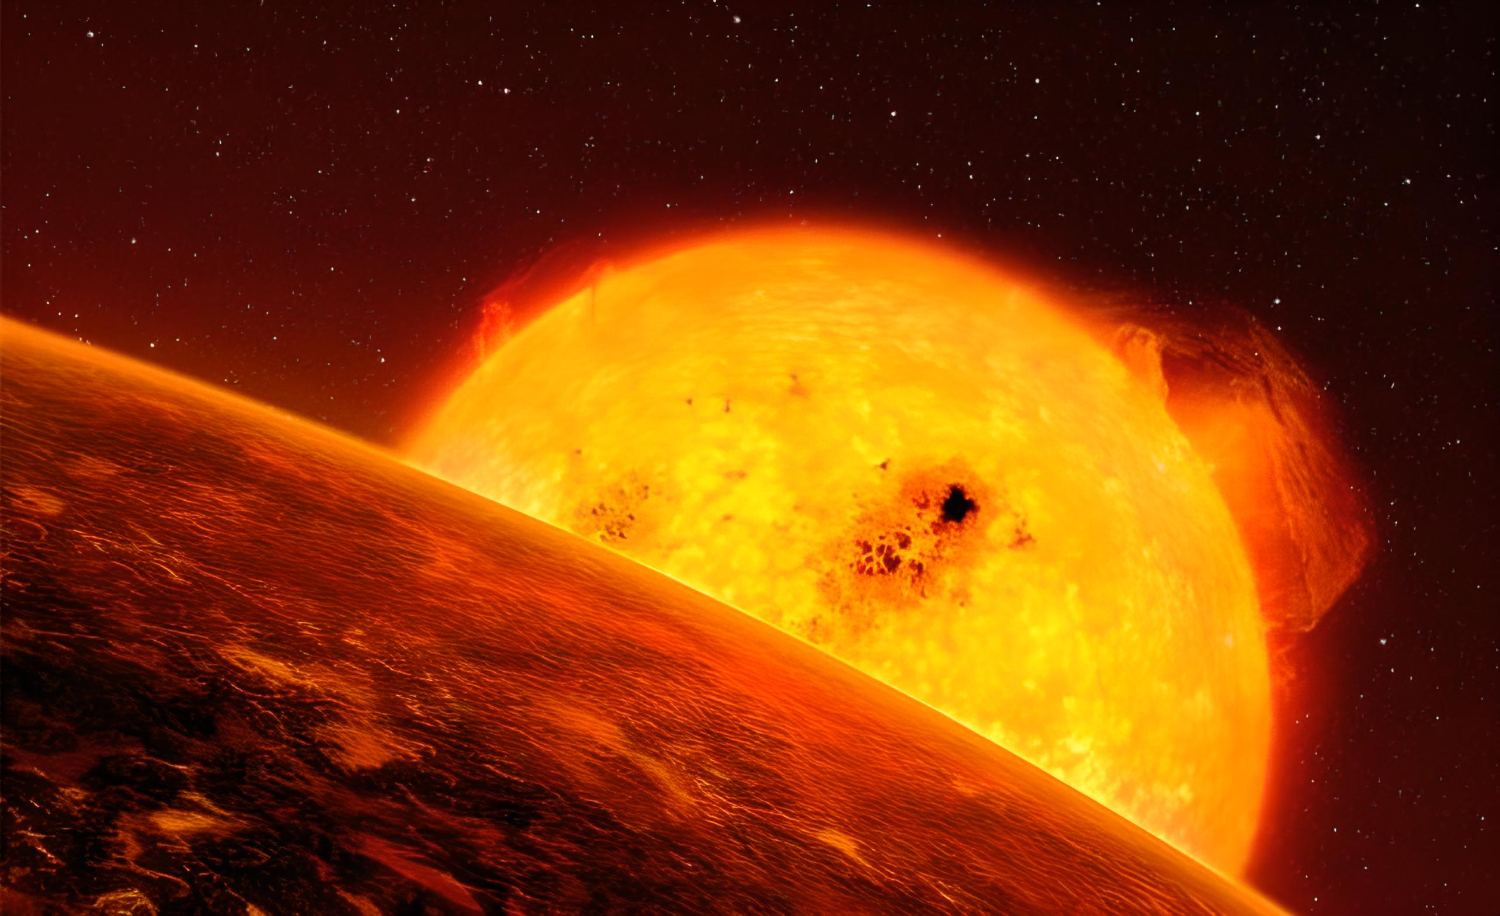 Αστρονομία: Τι θα συμβεί στη Γη και στους άλλους πλανήτες όταν ο Ήλιος πεθάνει;